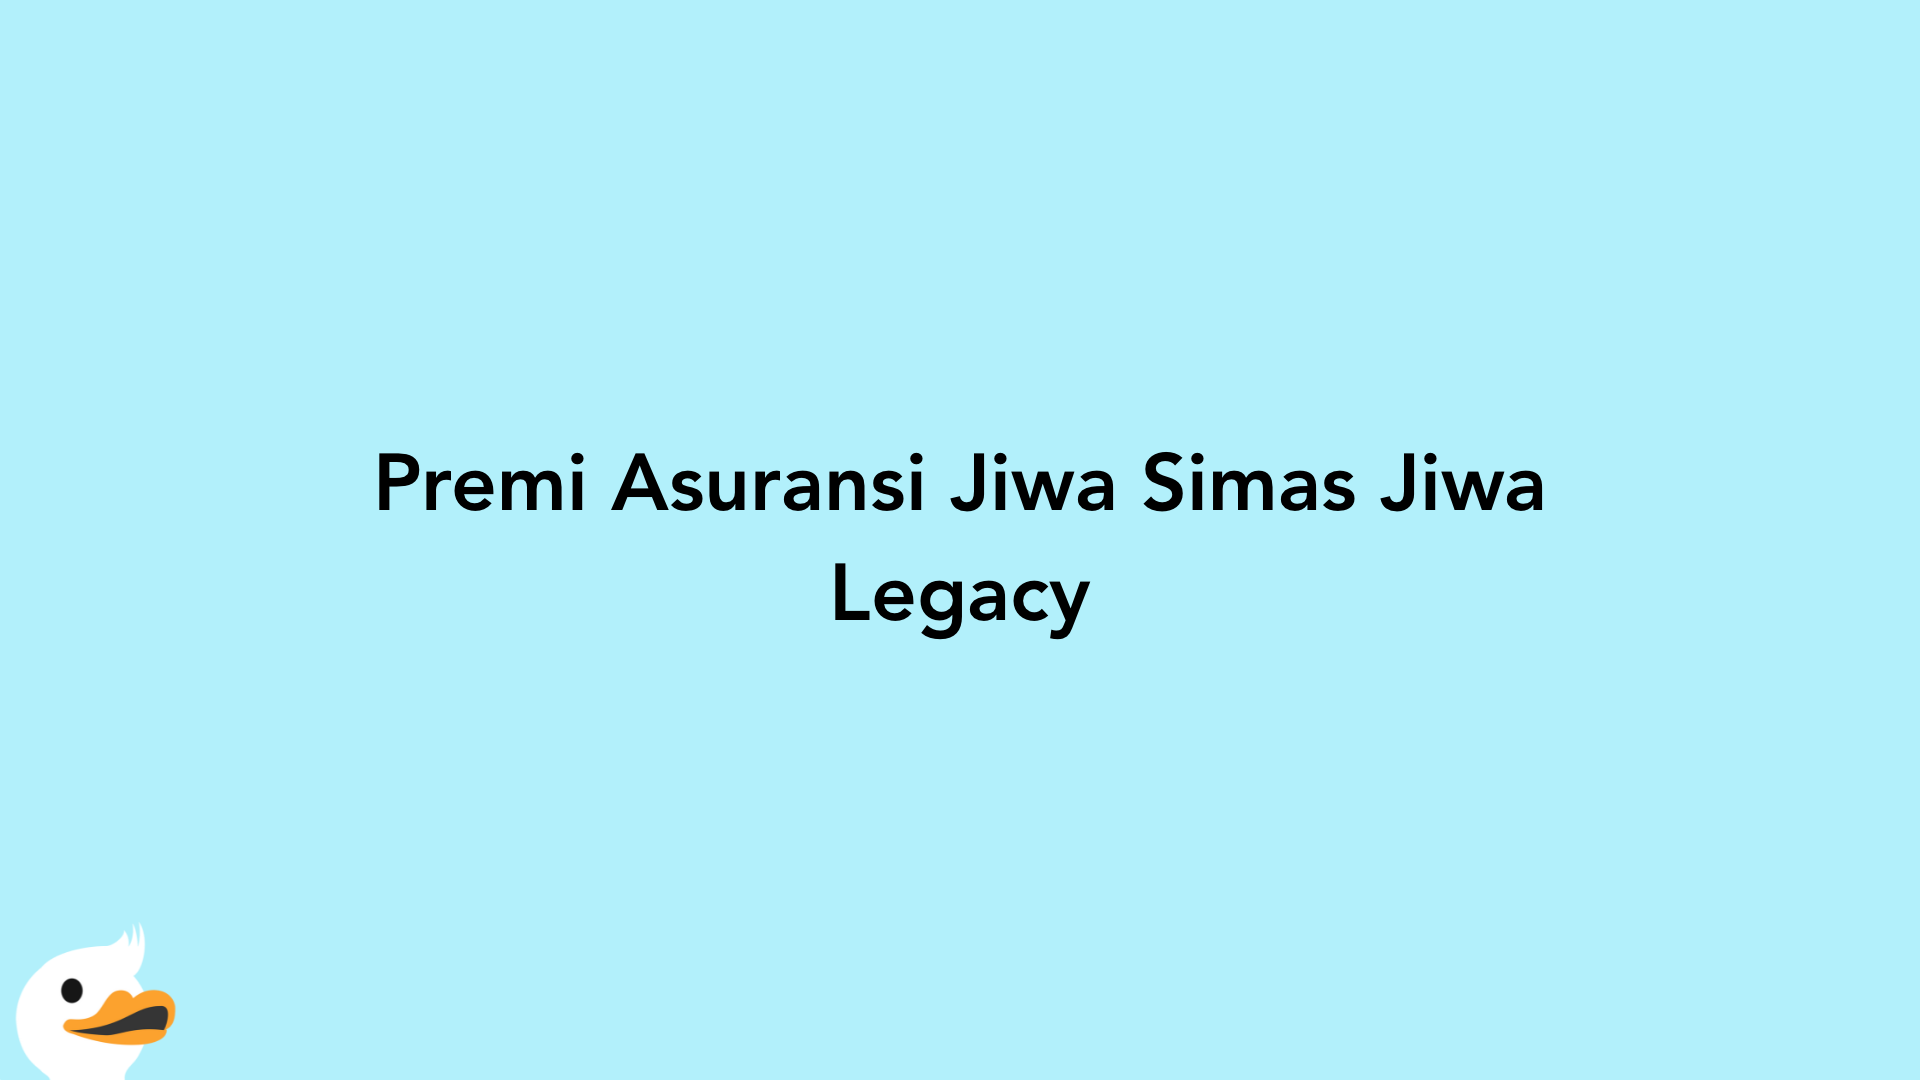 Premi Asuransi Jiwa Simas Jiwa Legacy